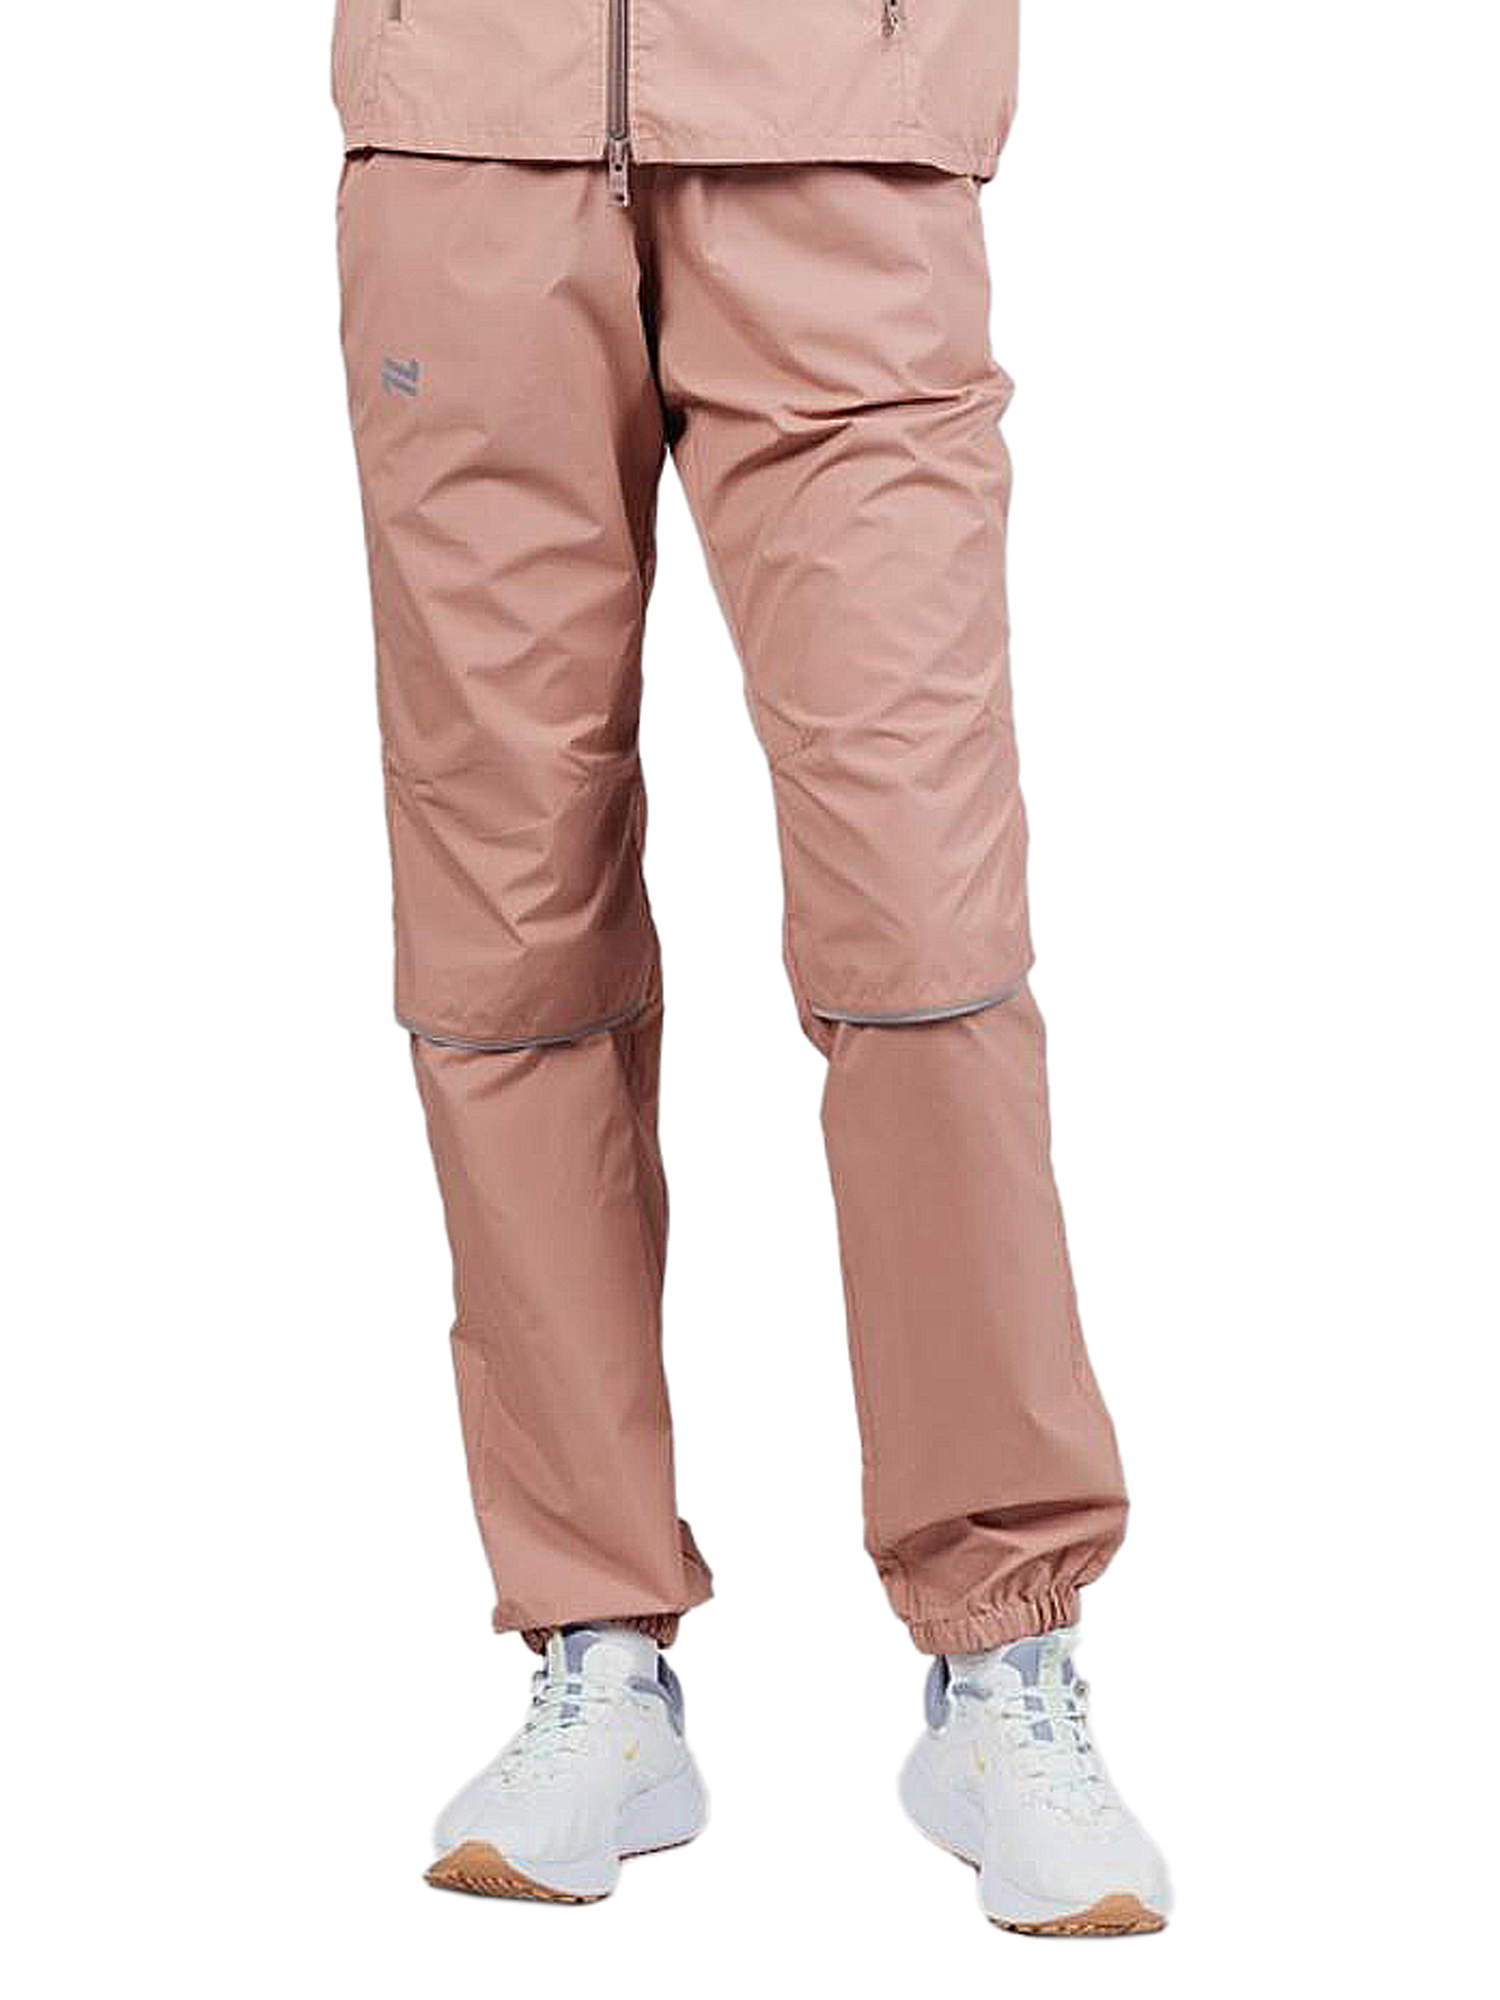 Спортивные брюки женские NordSki Rain бежевые 36